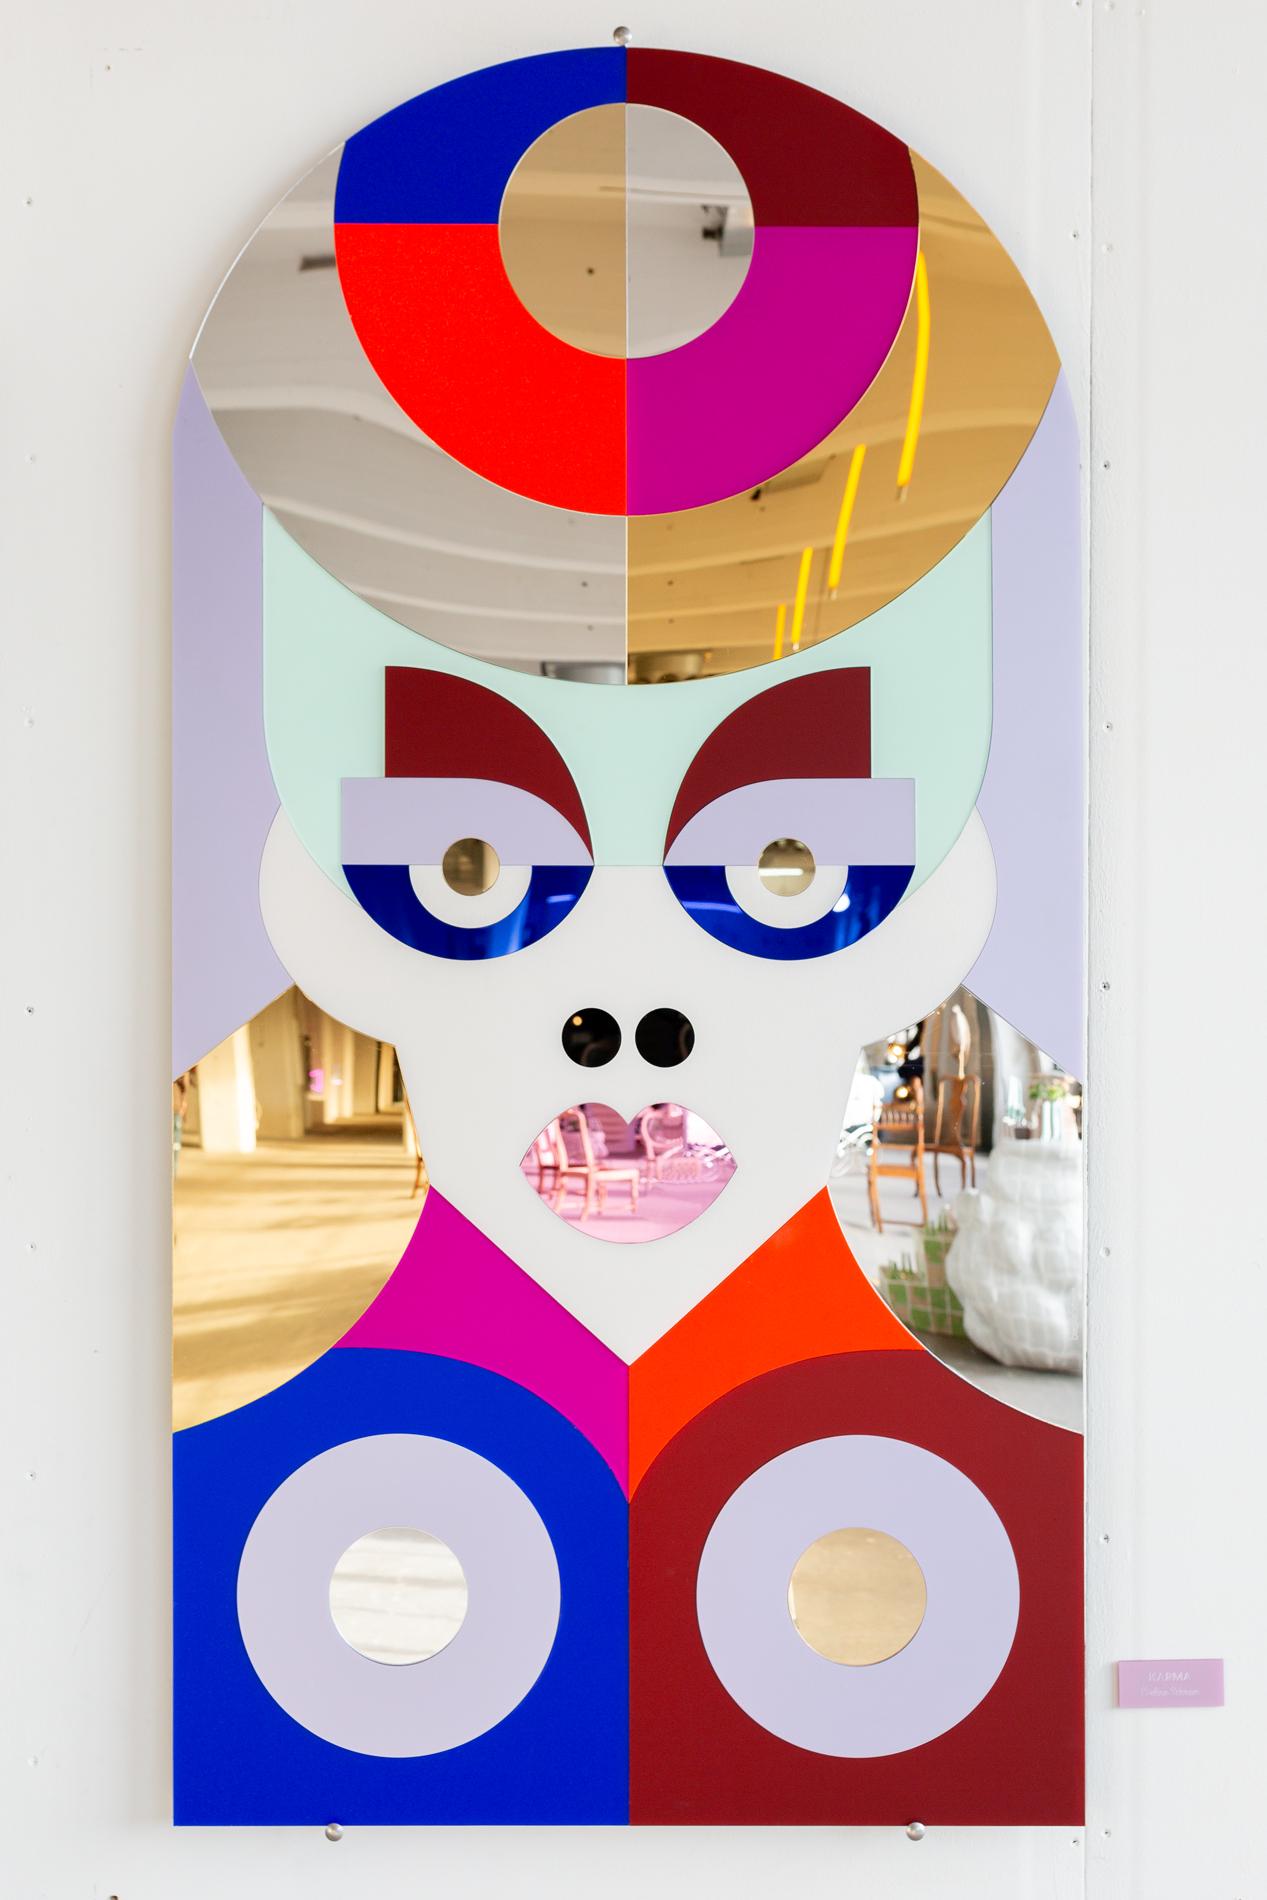 Karma ist ein 150 cm hohes, farbenfrohes Spiegelkunstwerk, das von Eveline Schram entworfen und gestaltet wurde. Das Werk besteht vollständig aus einer Vielzahl von Plexiglasmaterialien, darunter reflektierende farbige Spiegel-, Frost-, Metall- und